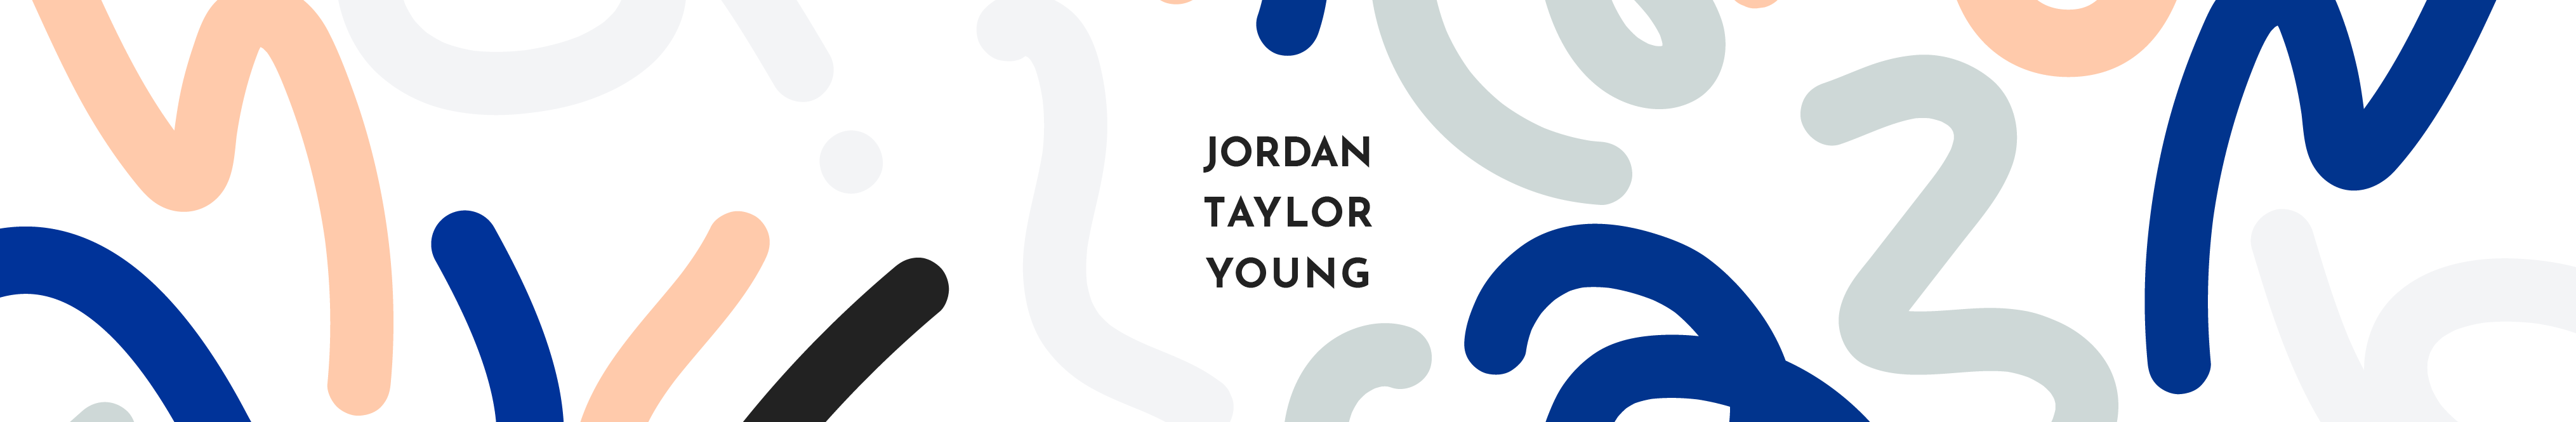 Jordan Young's profile banner